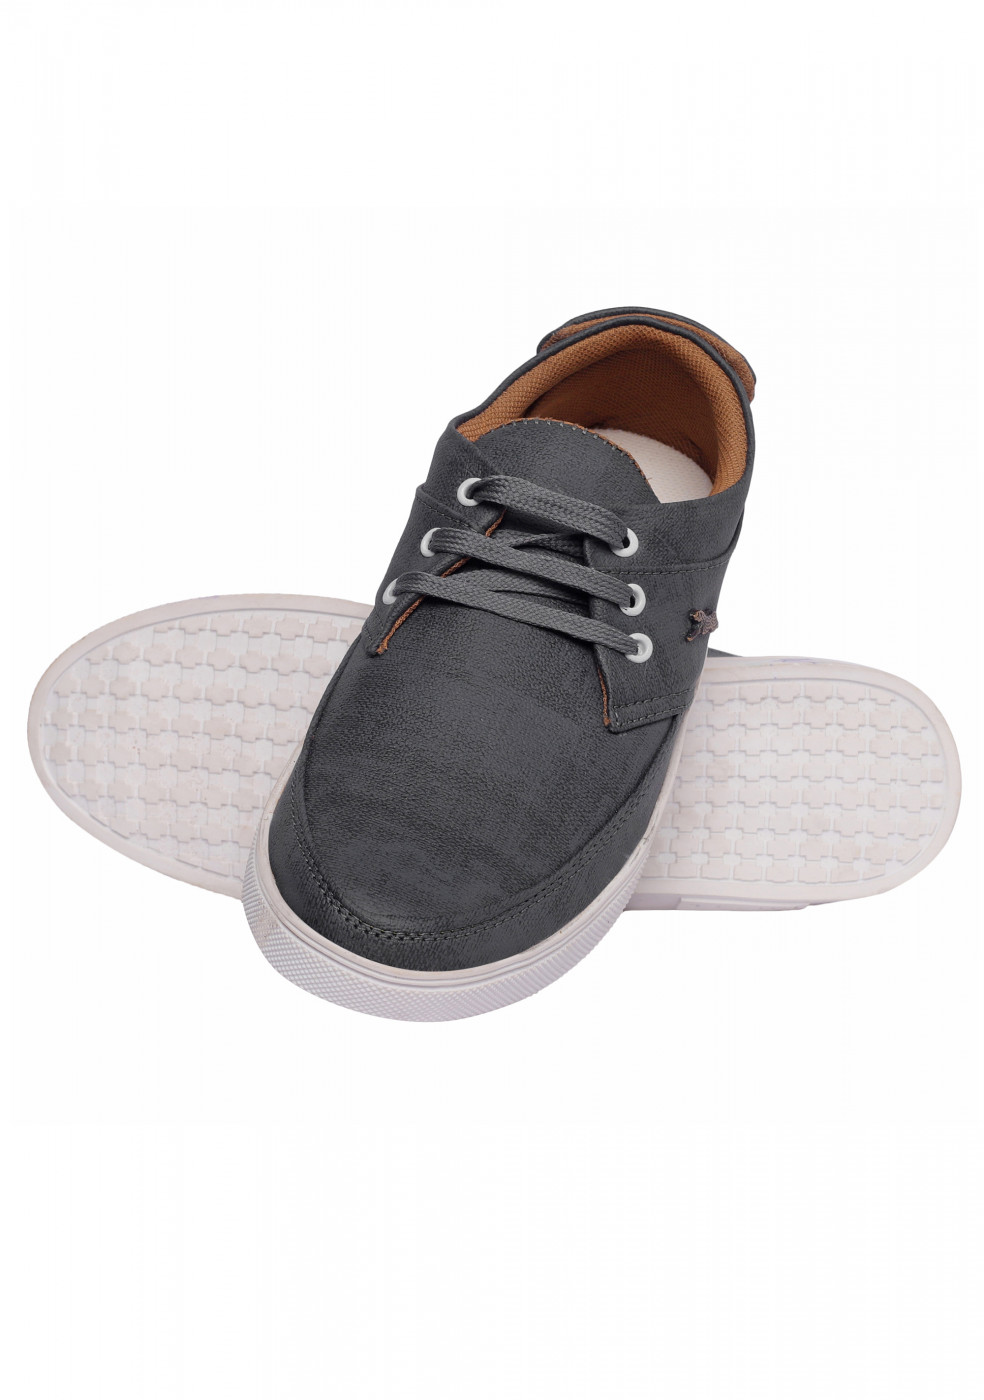 PERFECT Dark Gray Sneakers For Men